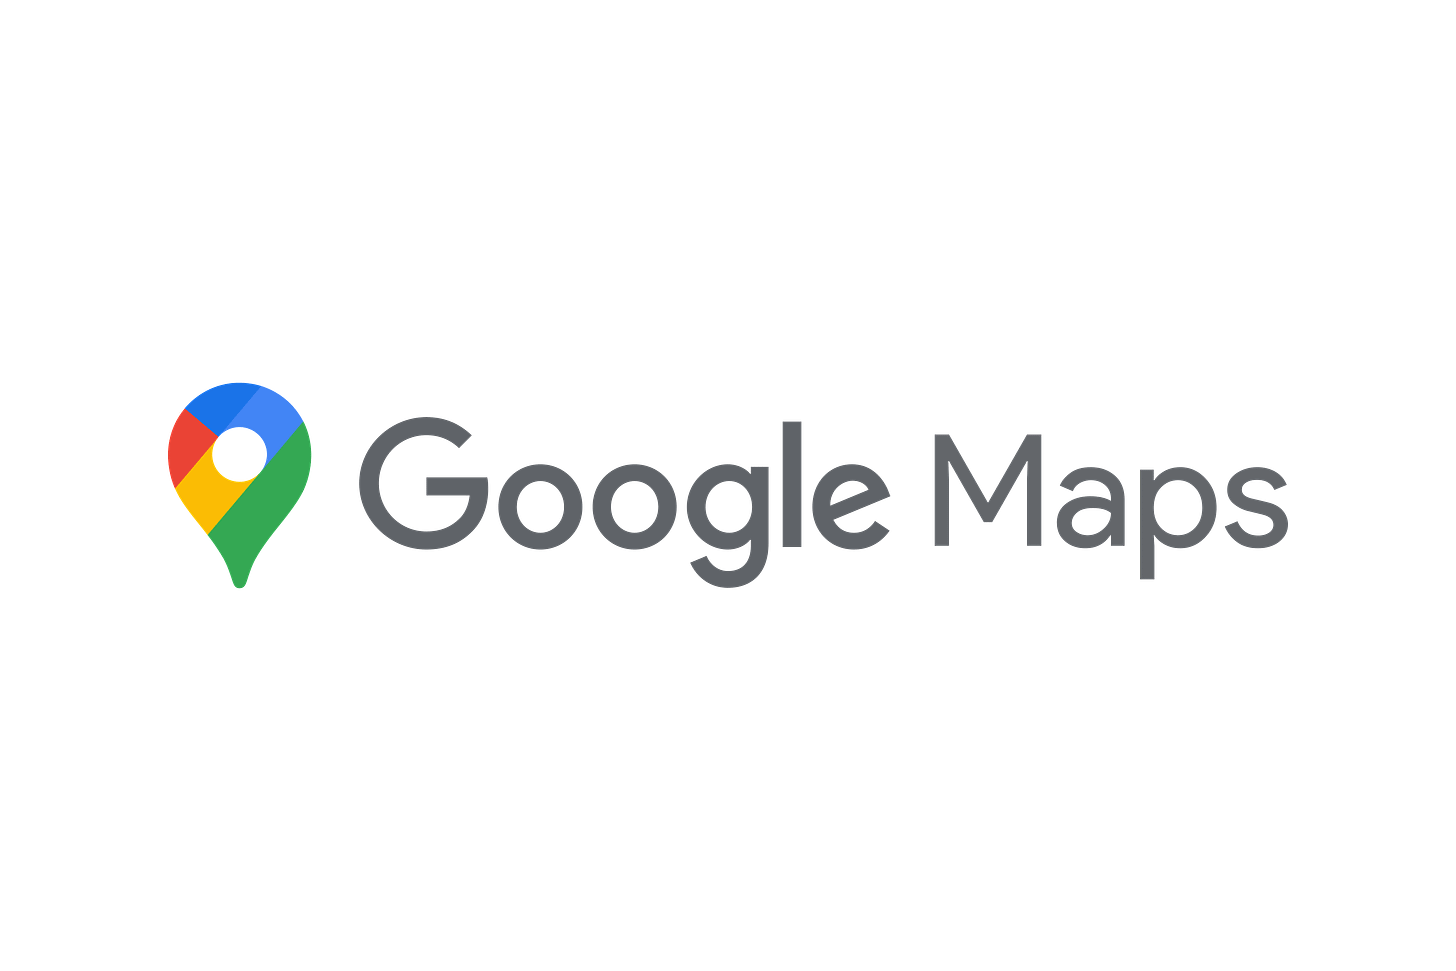 Download Google Maps Logo in SVG Vector or PNG File Format - Logo.wine